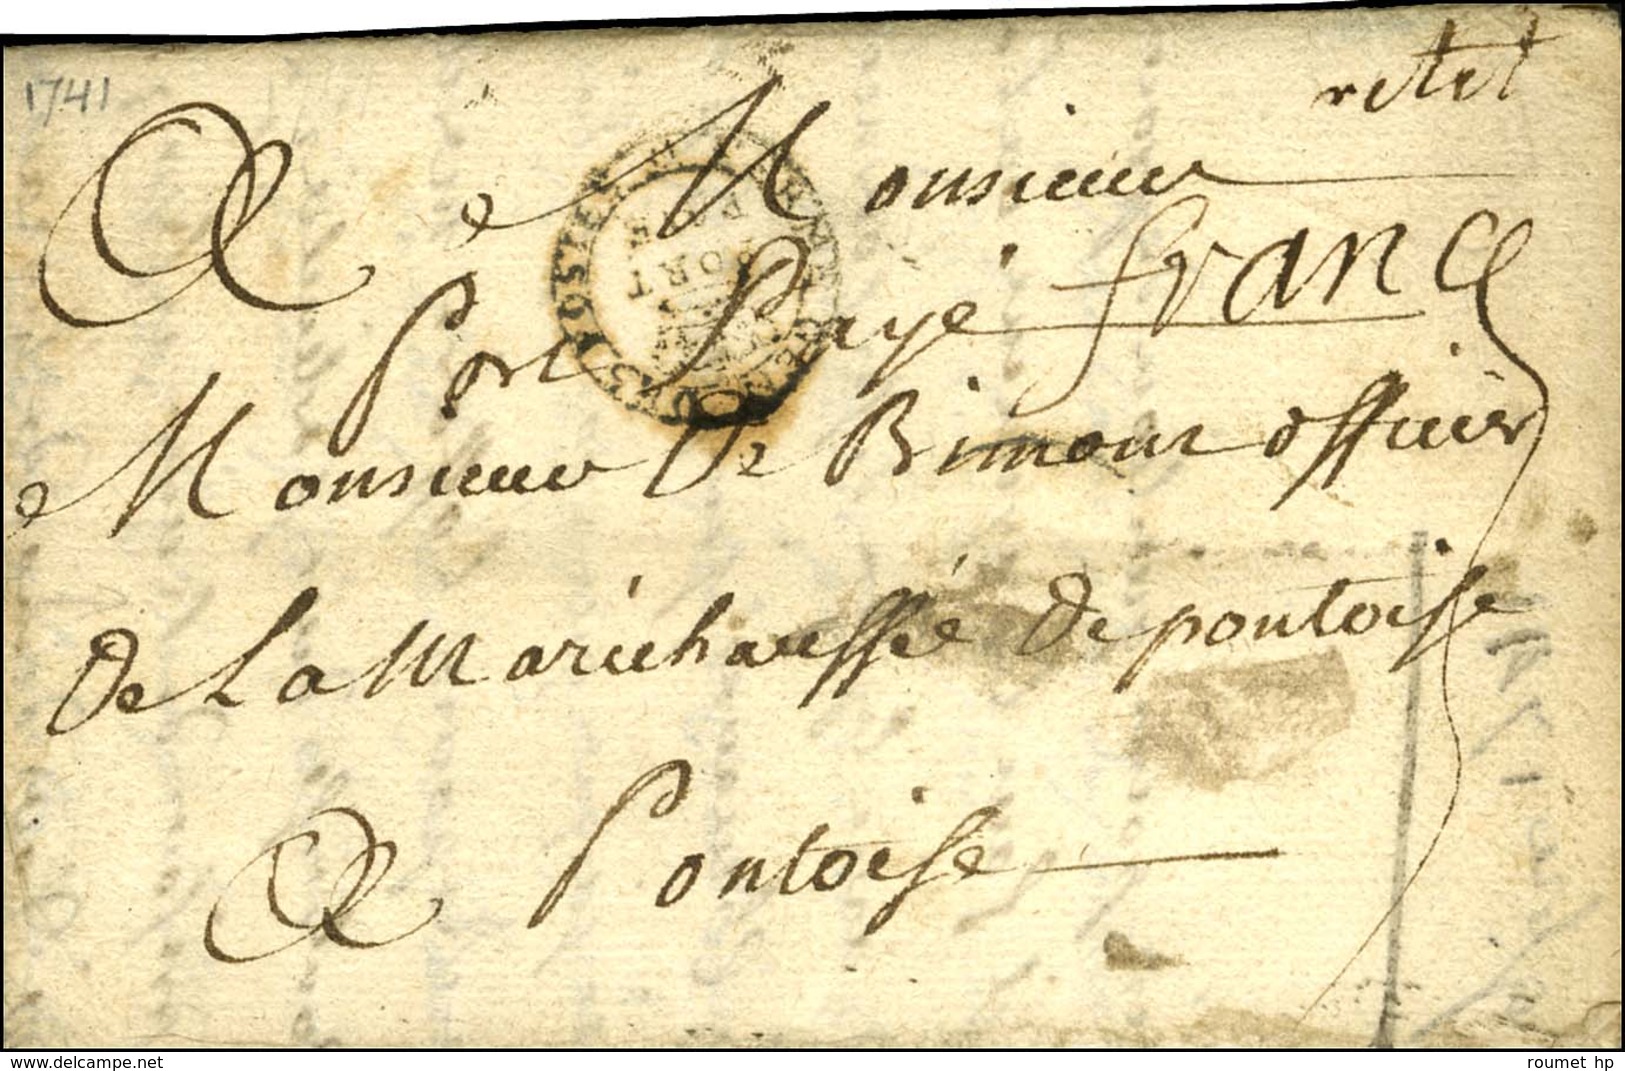 Marque Postale Ornée FERME GEN. DES POSTES / PORT / PAYE (L N° 34). 1741. - TB. - 1701-1800: Précurseurs XVIII